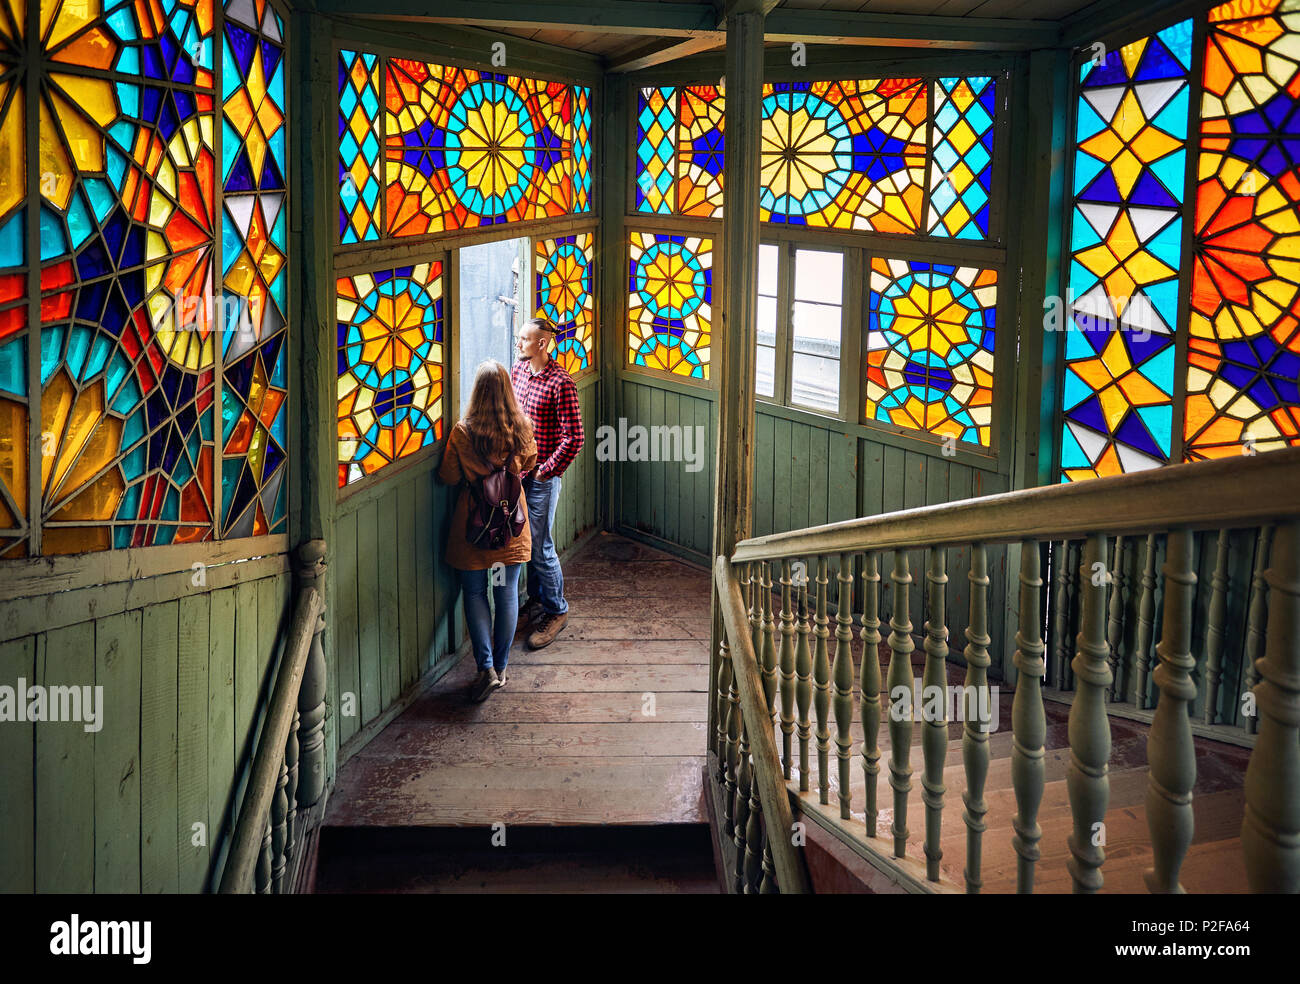 Romantisches Paar von Tourist am Balkon mit Treppe und buntes Mosaik Gläser in der Altstadt von Tiflis, Georgien. Stockfoto